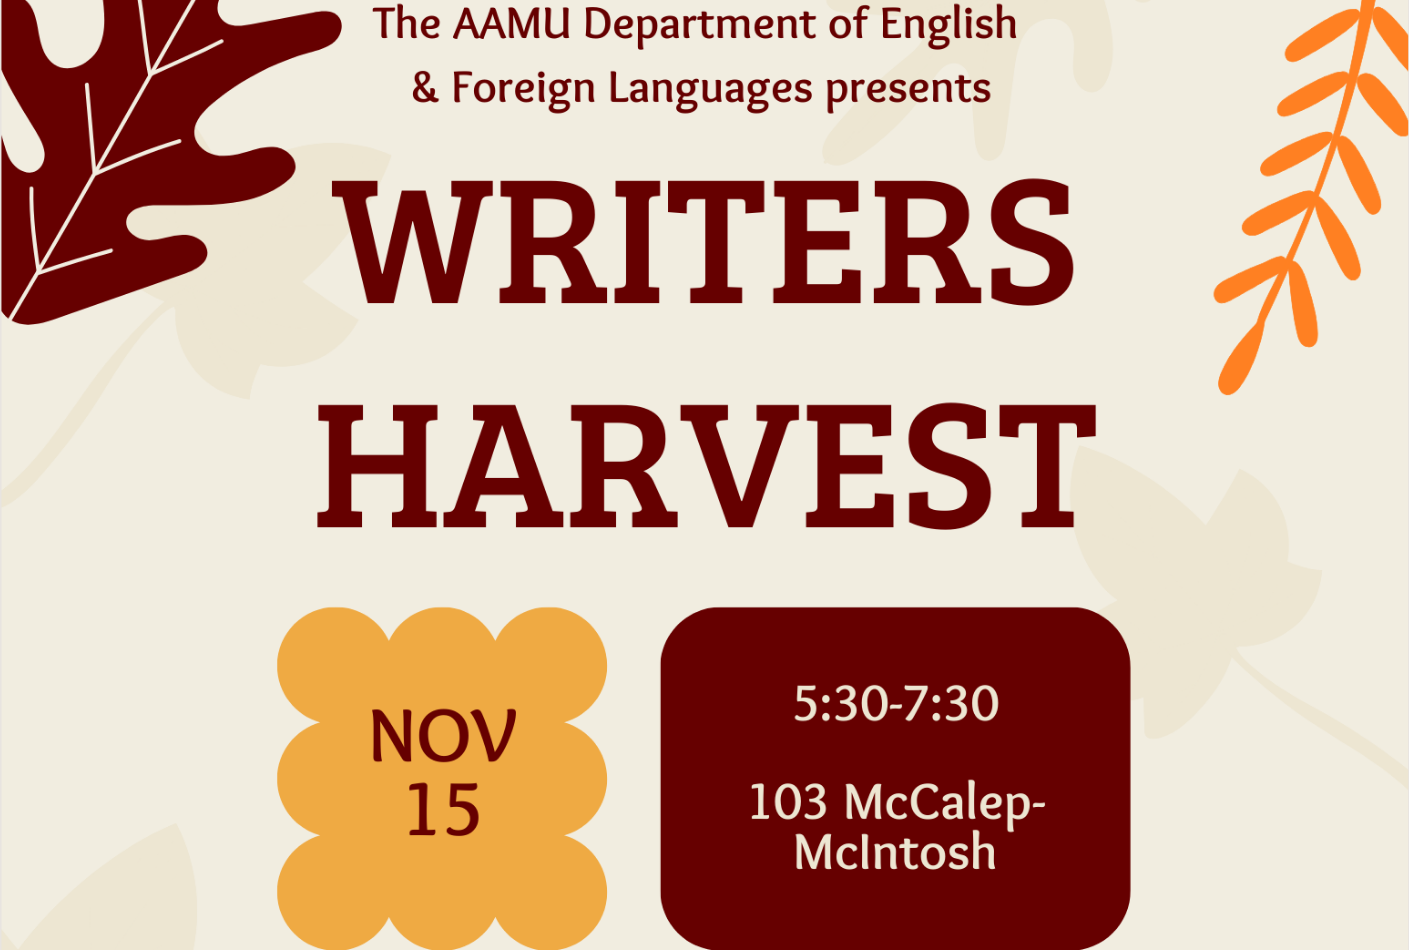 Writers Harvest